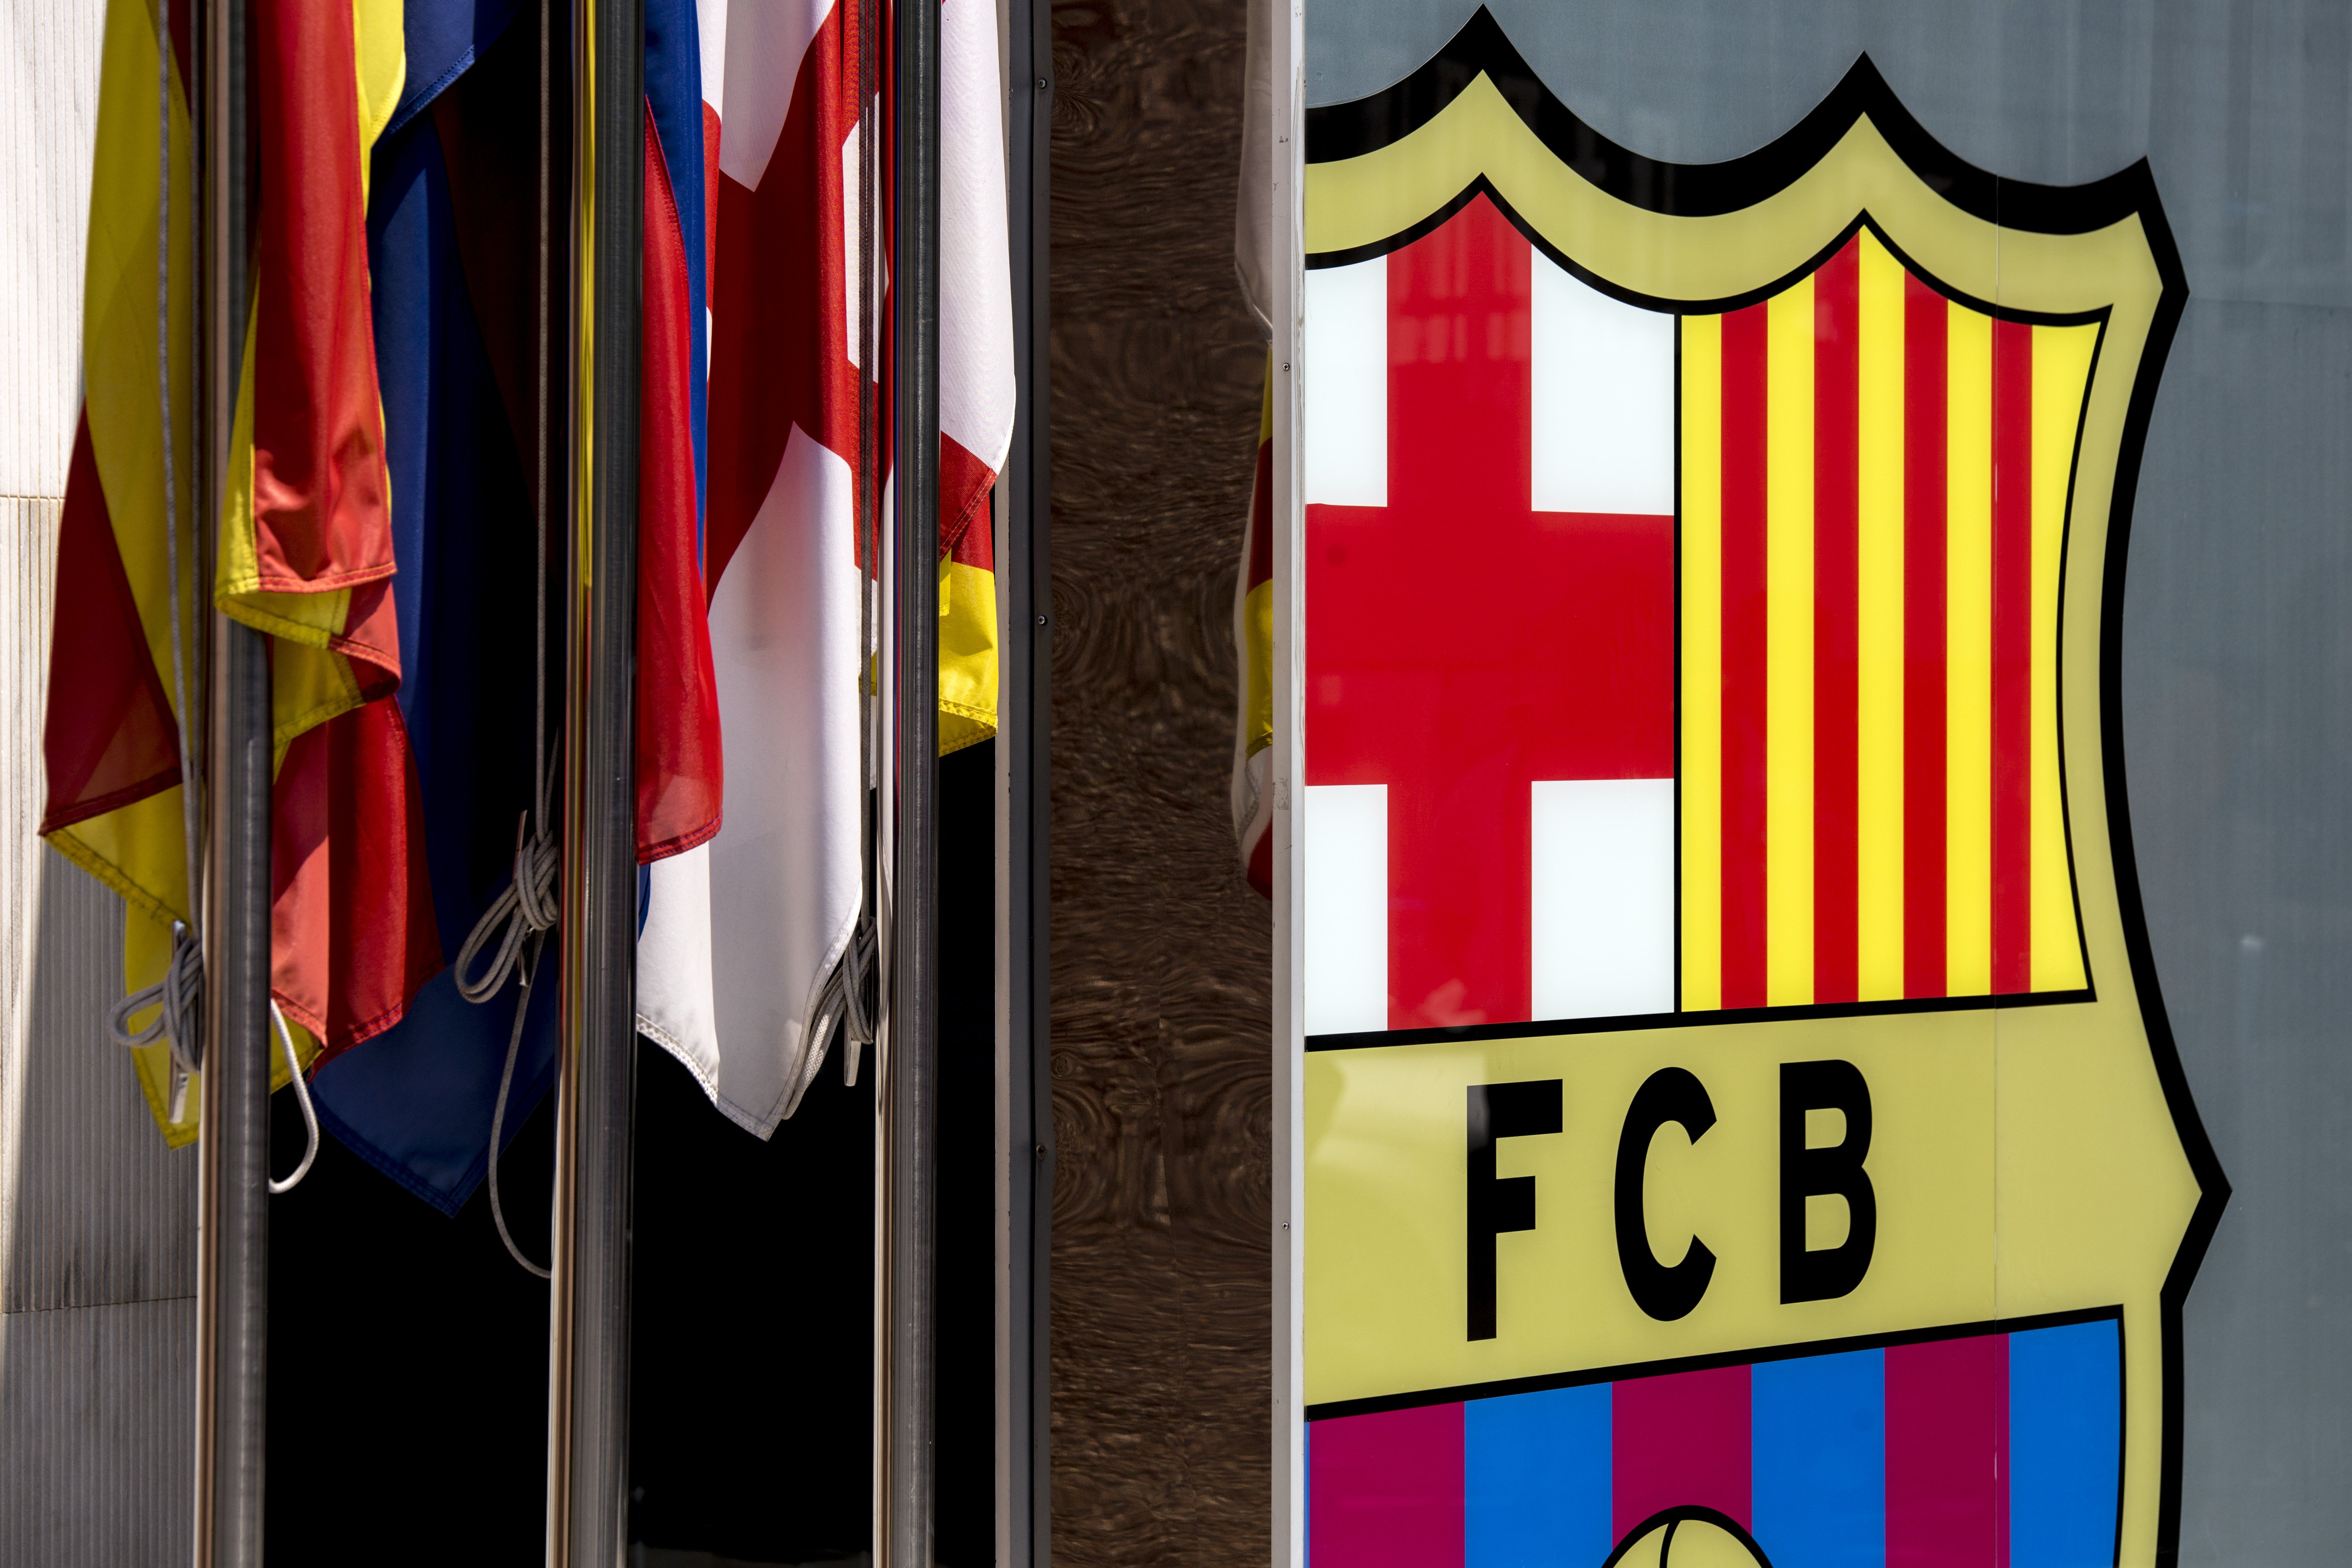 Comunicat: El Barça remet Neymar a la clàusula de 222 milions